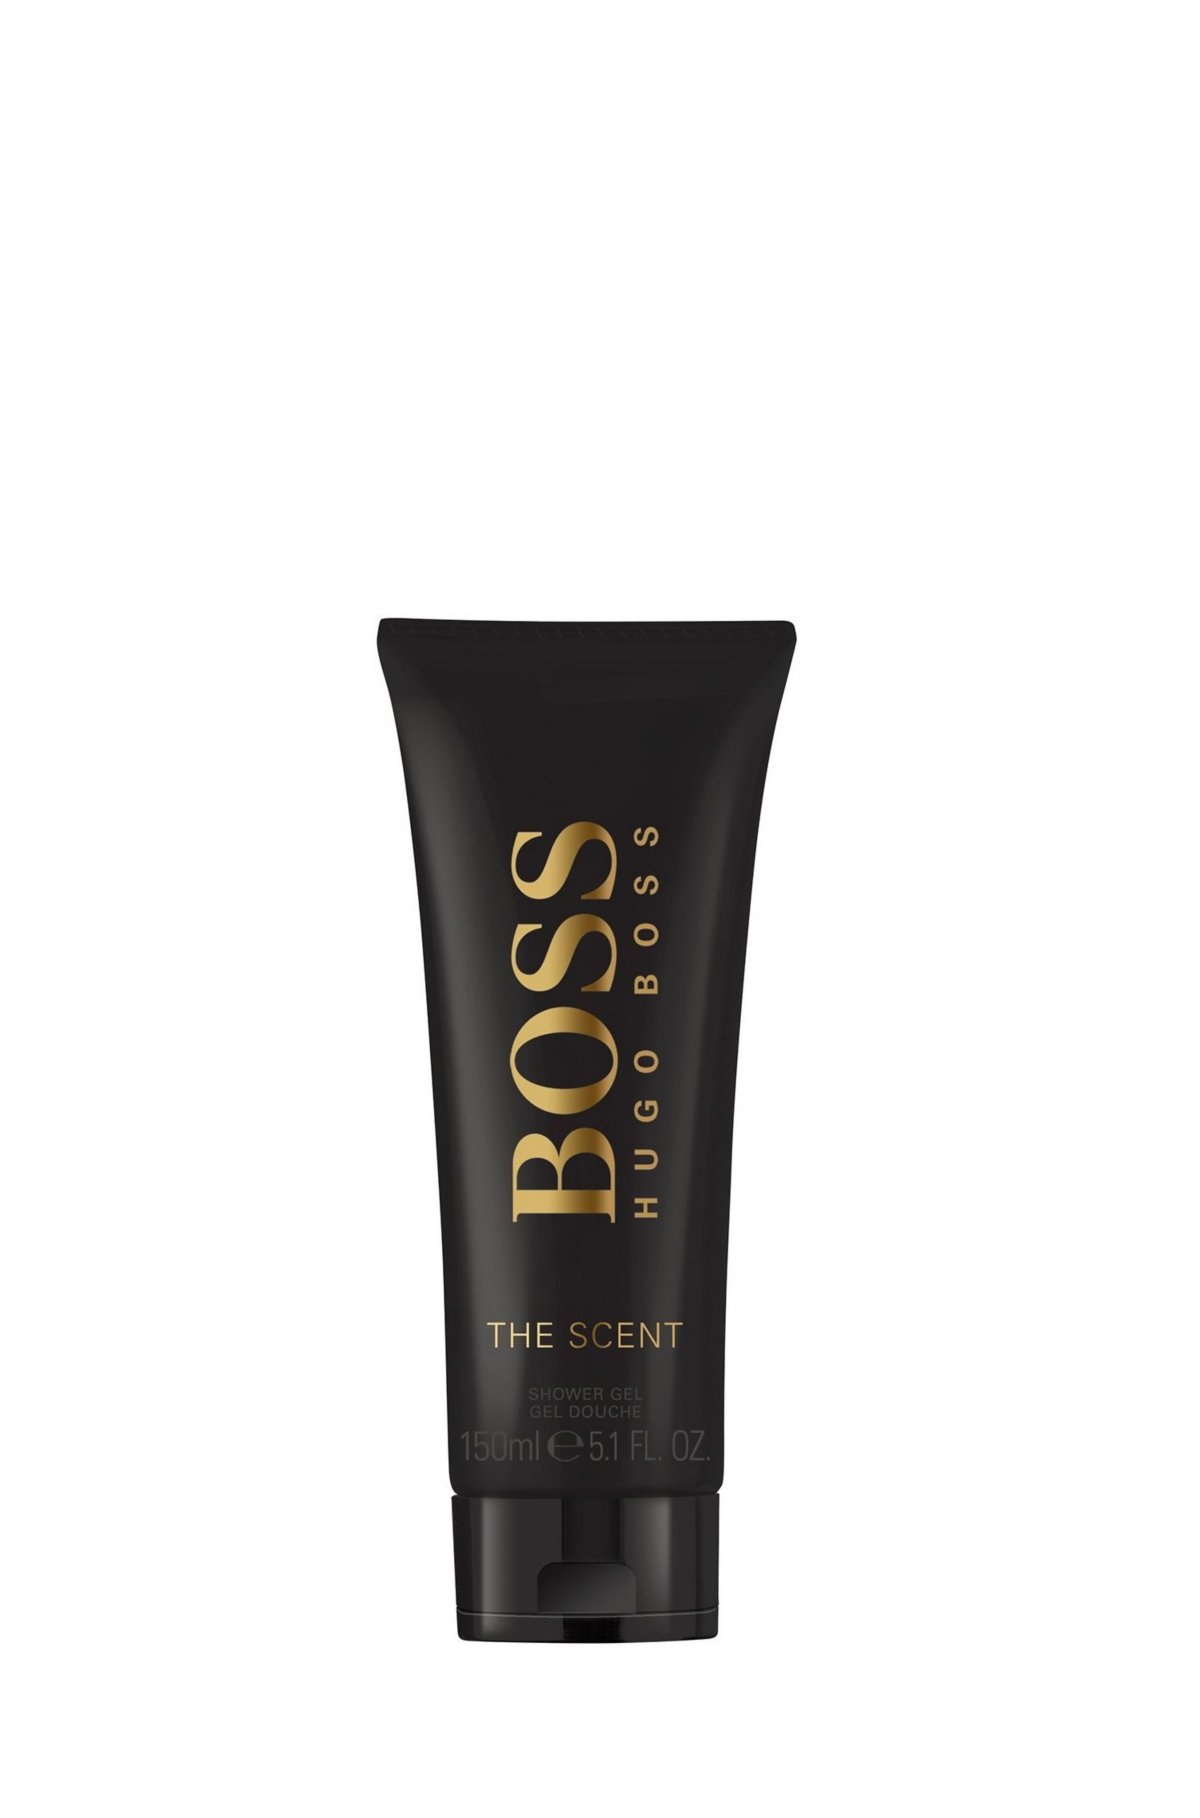 The gel BOSS BOSS 150ml shower Scent -